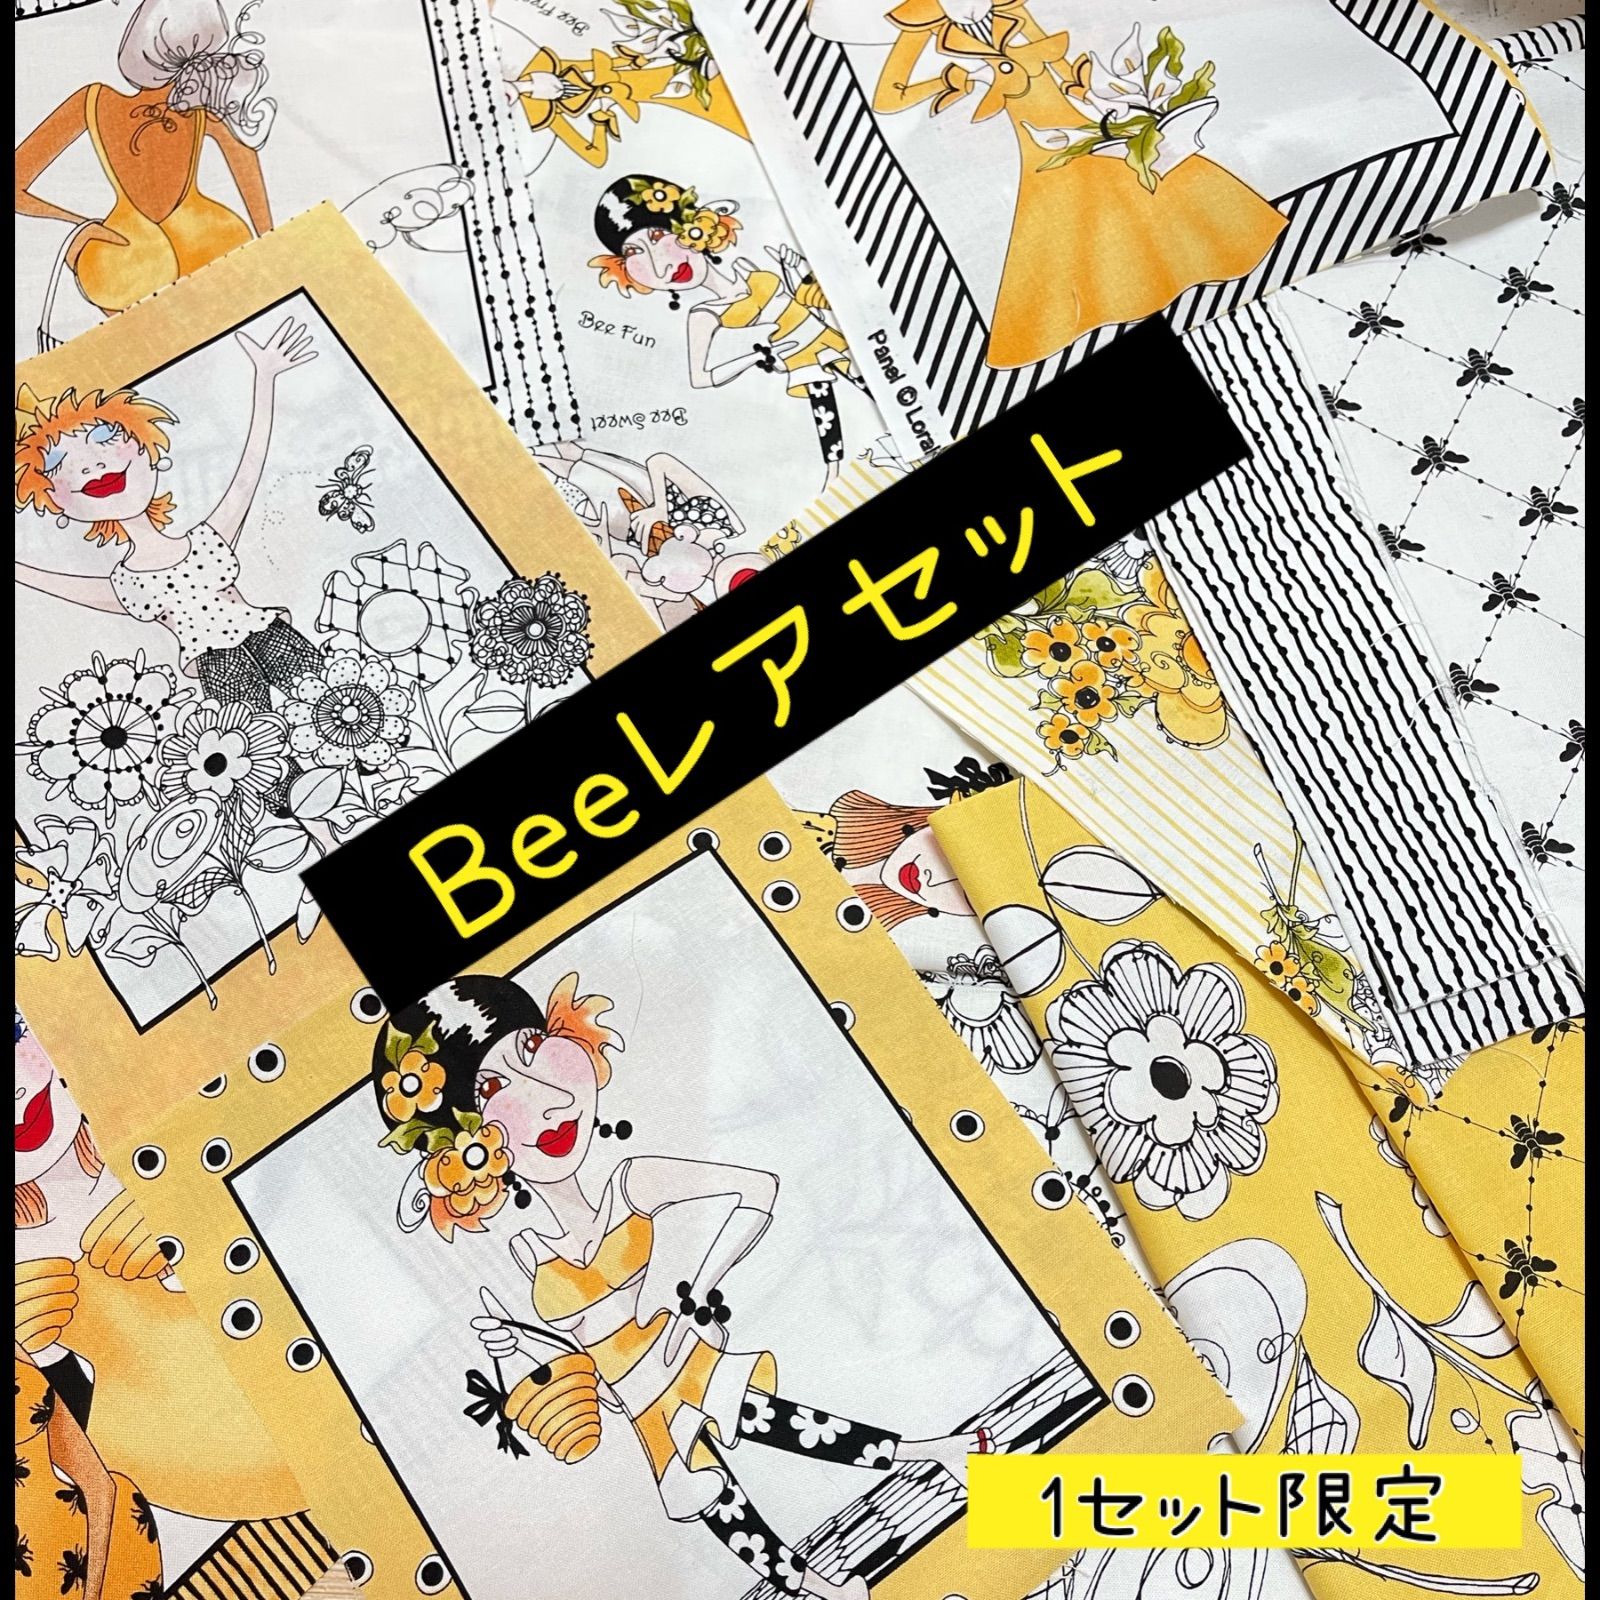 『レア』輸入生地 ロラライハリス生地 廃盤レア Beeシリーズハギレセット